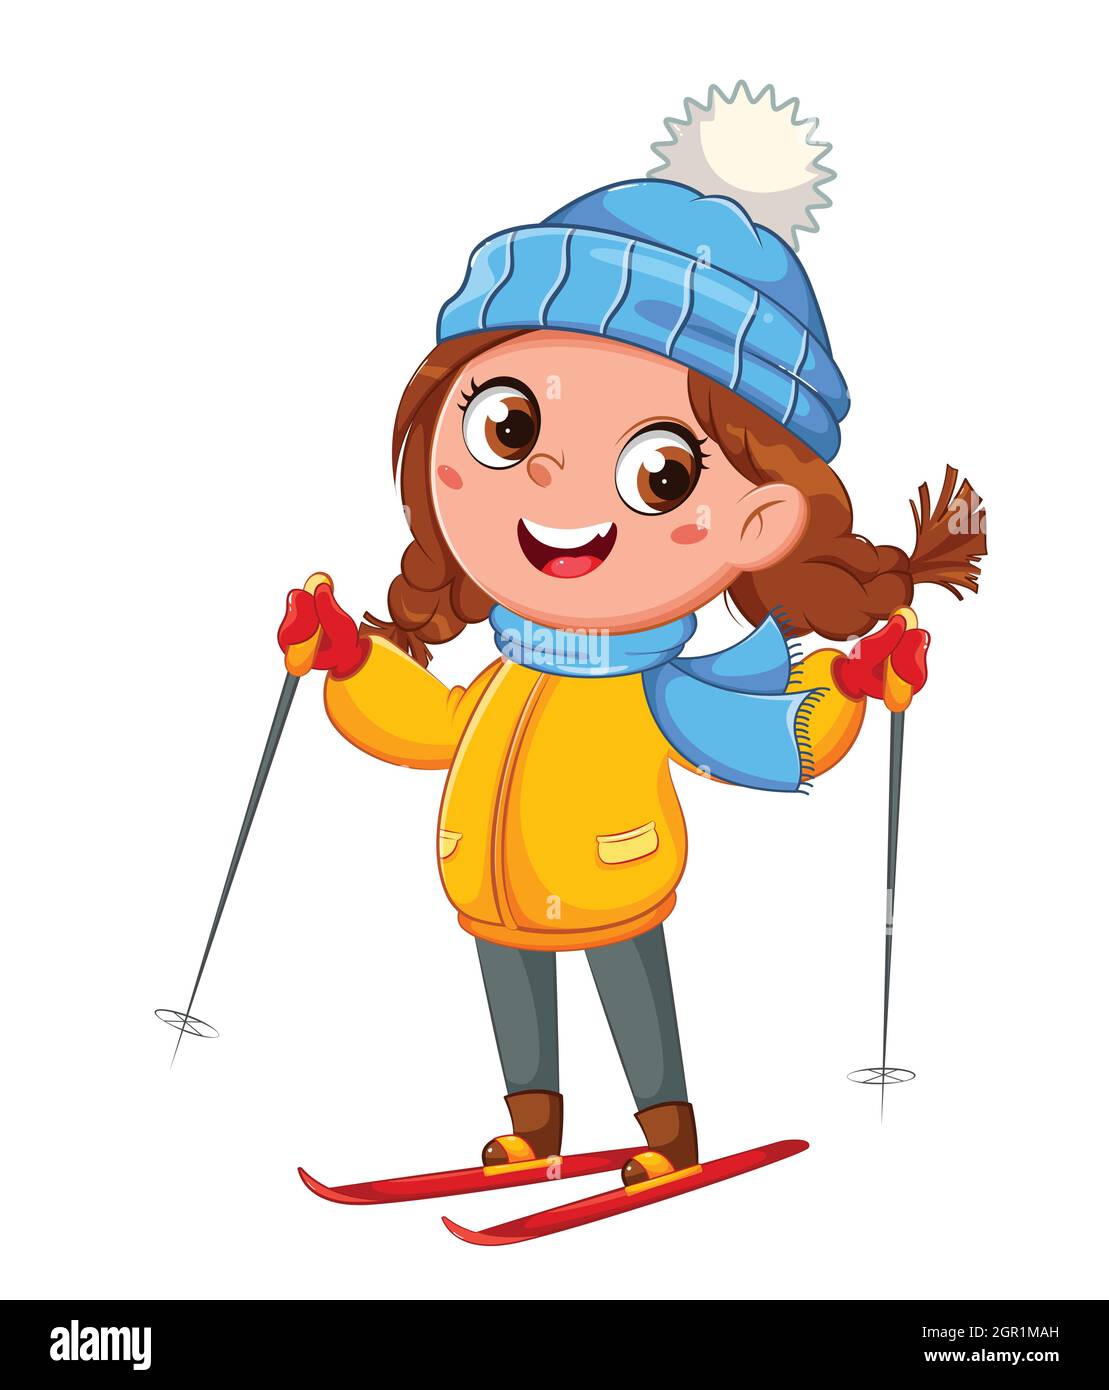 Ski pour enfants, adorable personnage de dessin animé de fille de skieur, sport d'hiver. Concept Hello Winter. Illustration vectorielle sur fond blanc Illustration de Vecteur